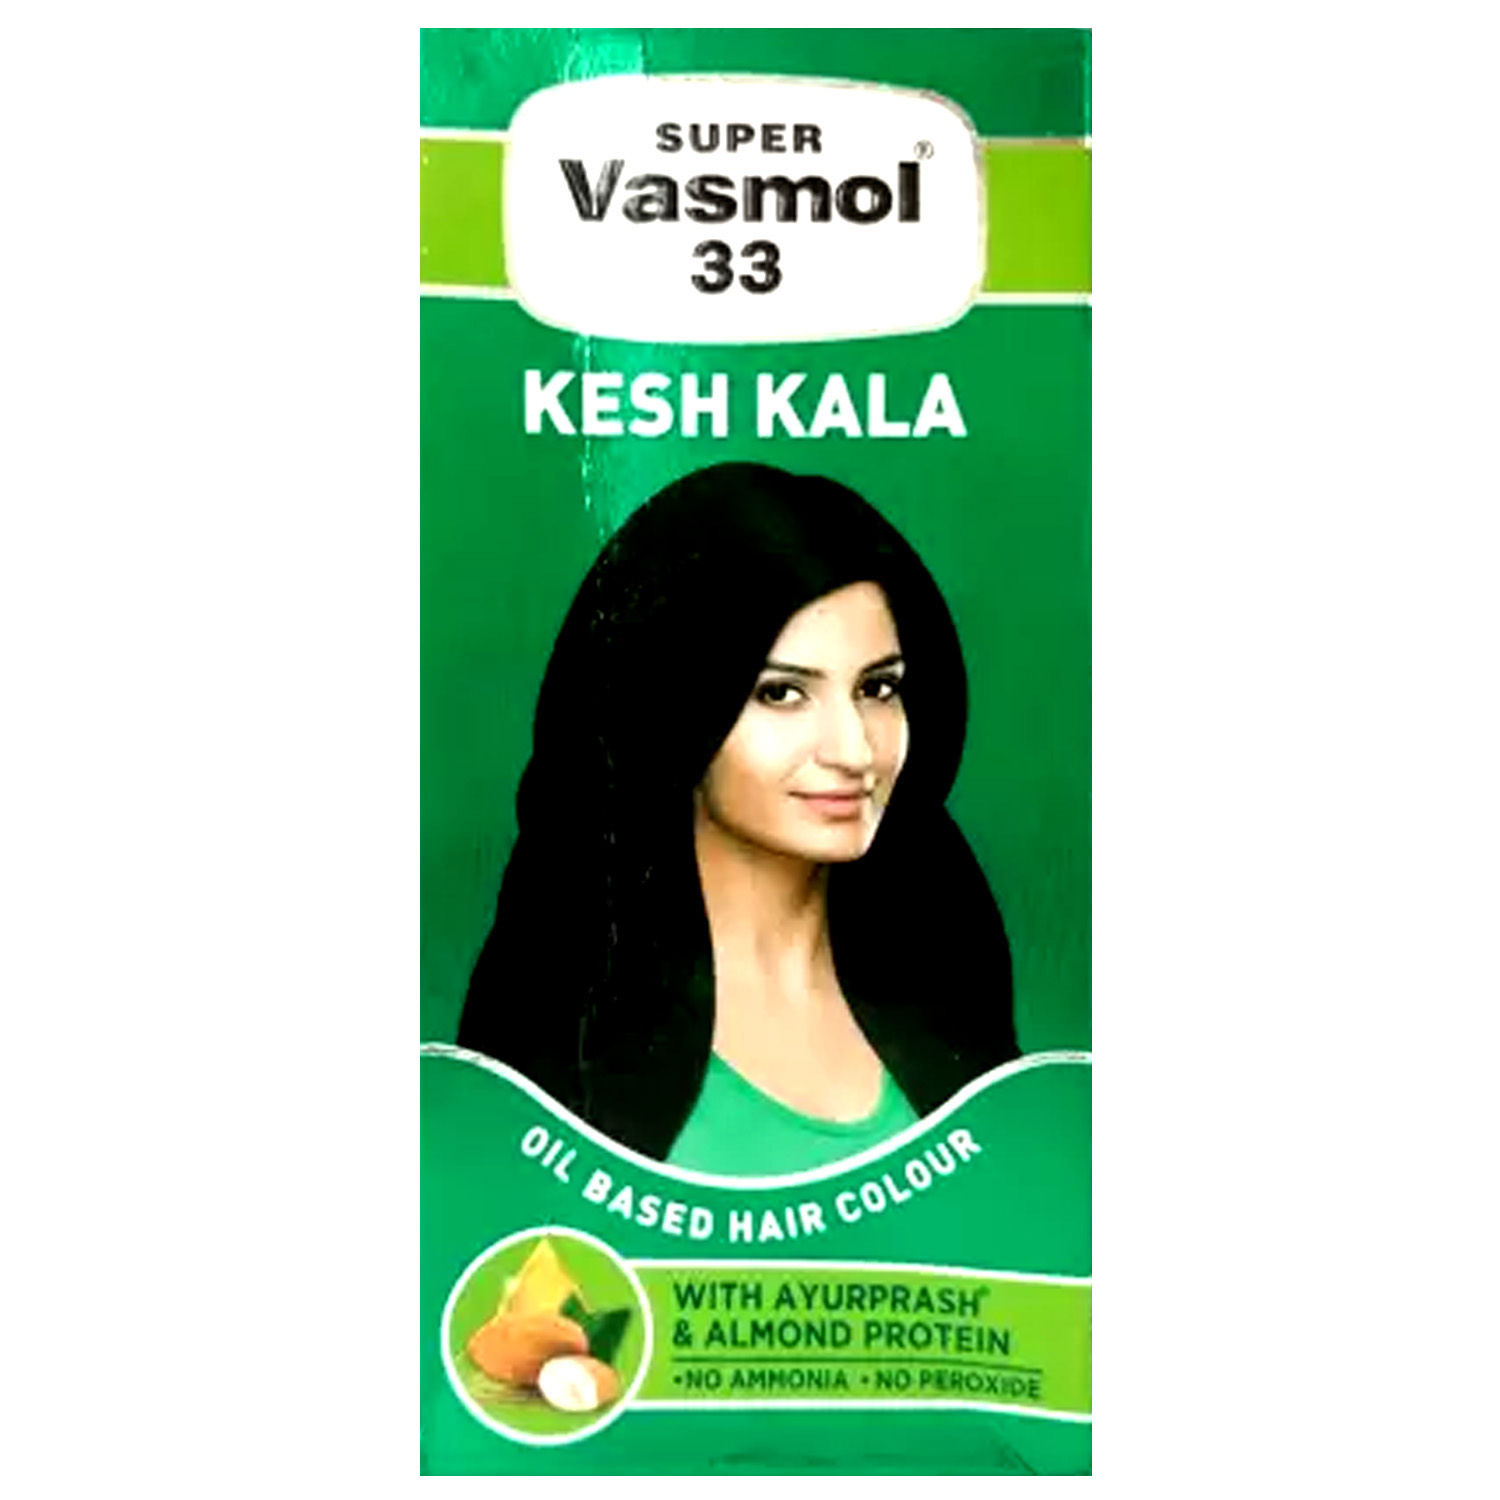 Super vasmol 33 kesh kala usesside effectsreviews in teluguhow to apply  on hair  YouTube